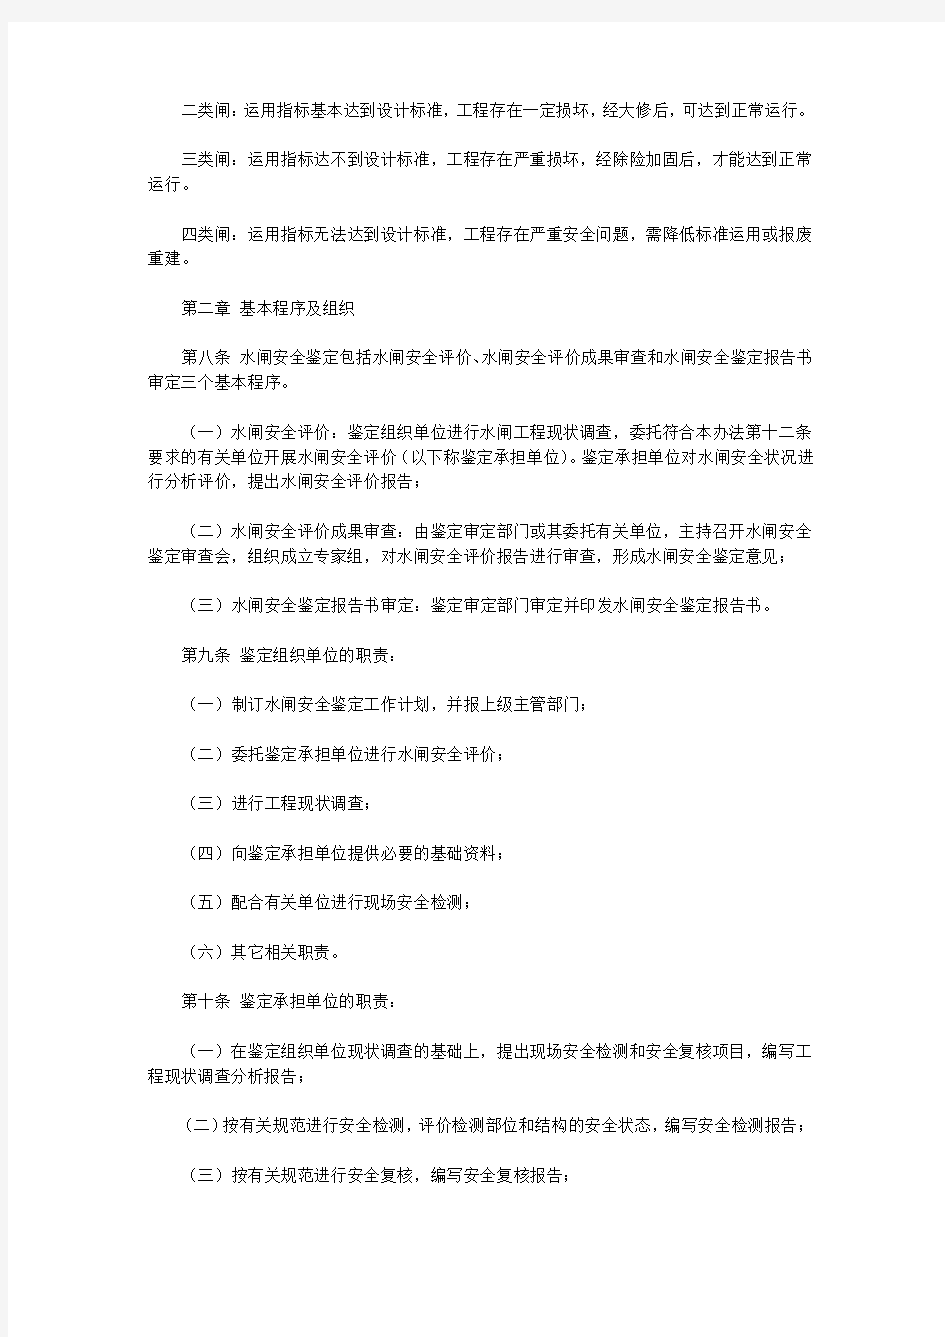 江苏省水闸安全鉴定管理办法(2020)